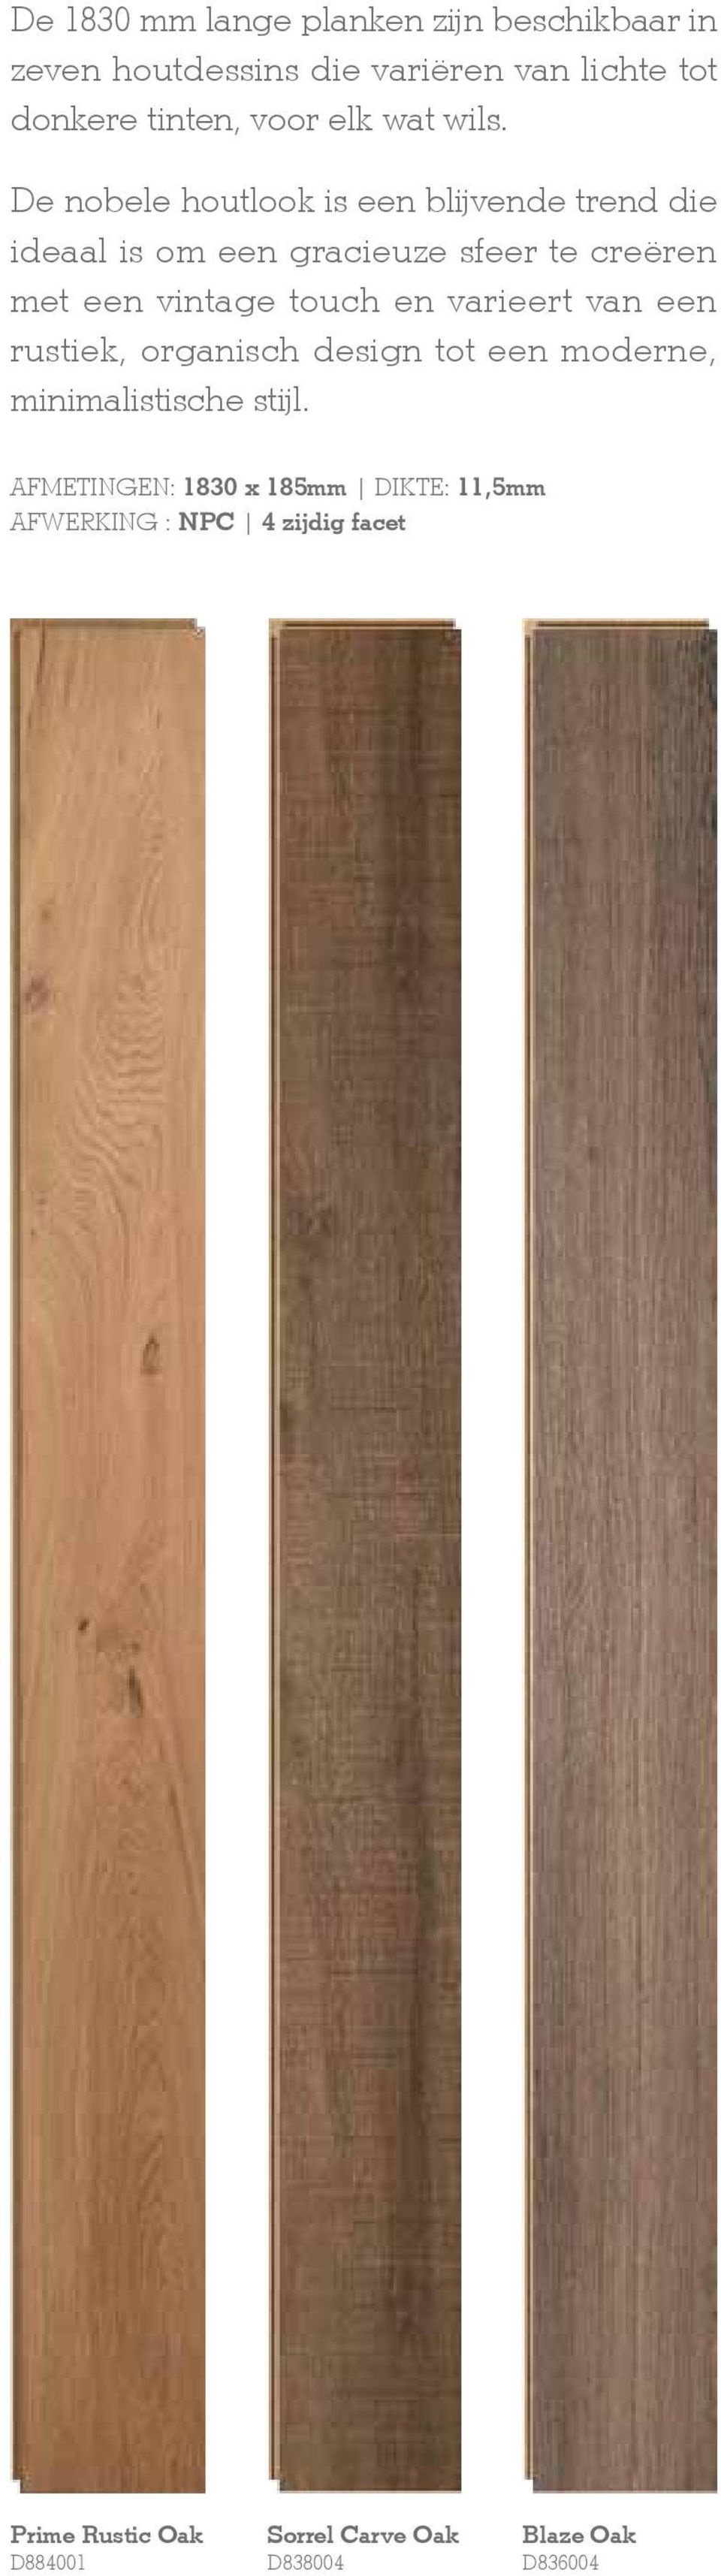 De nobele houtlook is een blijvende trend die ideaal is om een gracieuze sfeer te creëren met een vintage touch en